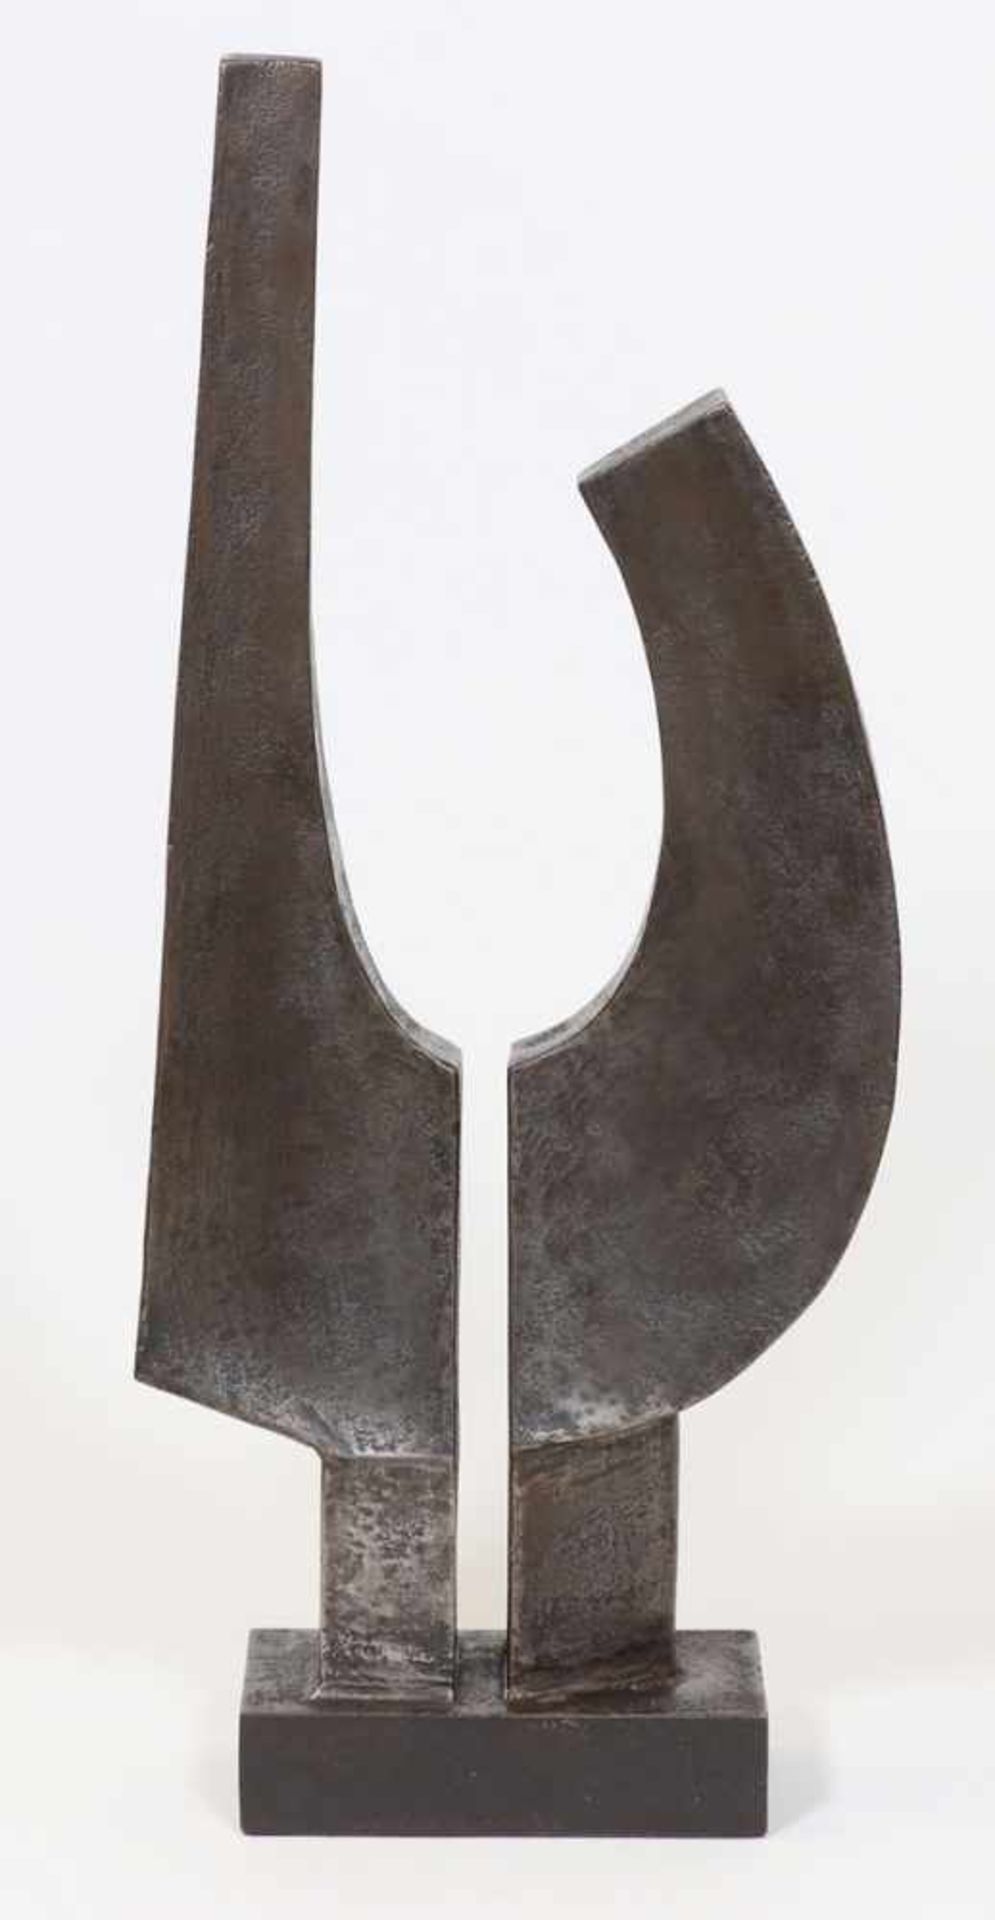 Künstler des 20. Jahrhunderts- Ohne Titel - Metall. H. 58 cm. - Provenienz: Kunstsammlung